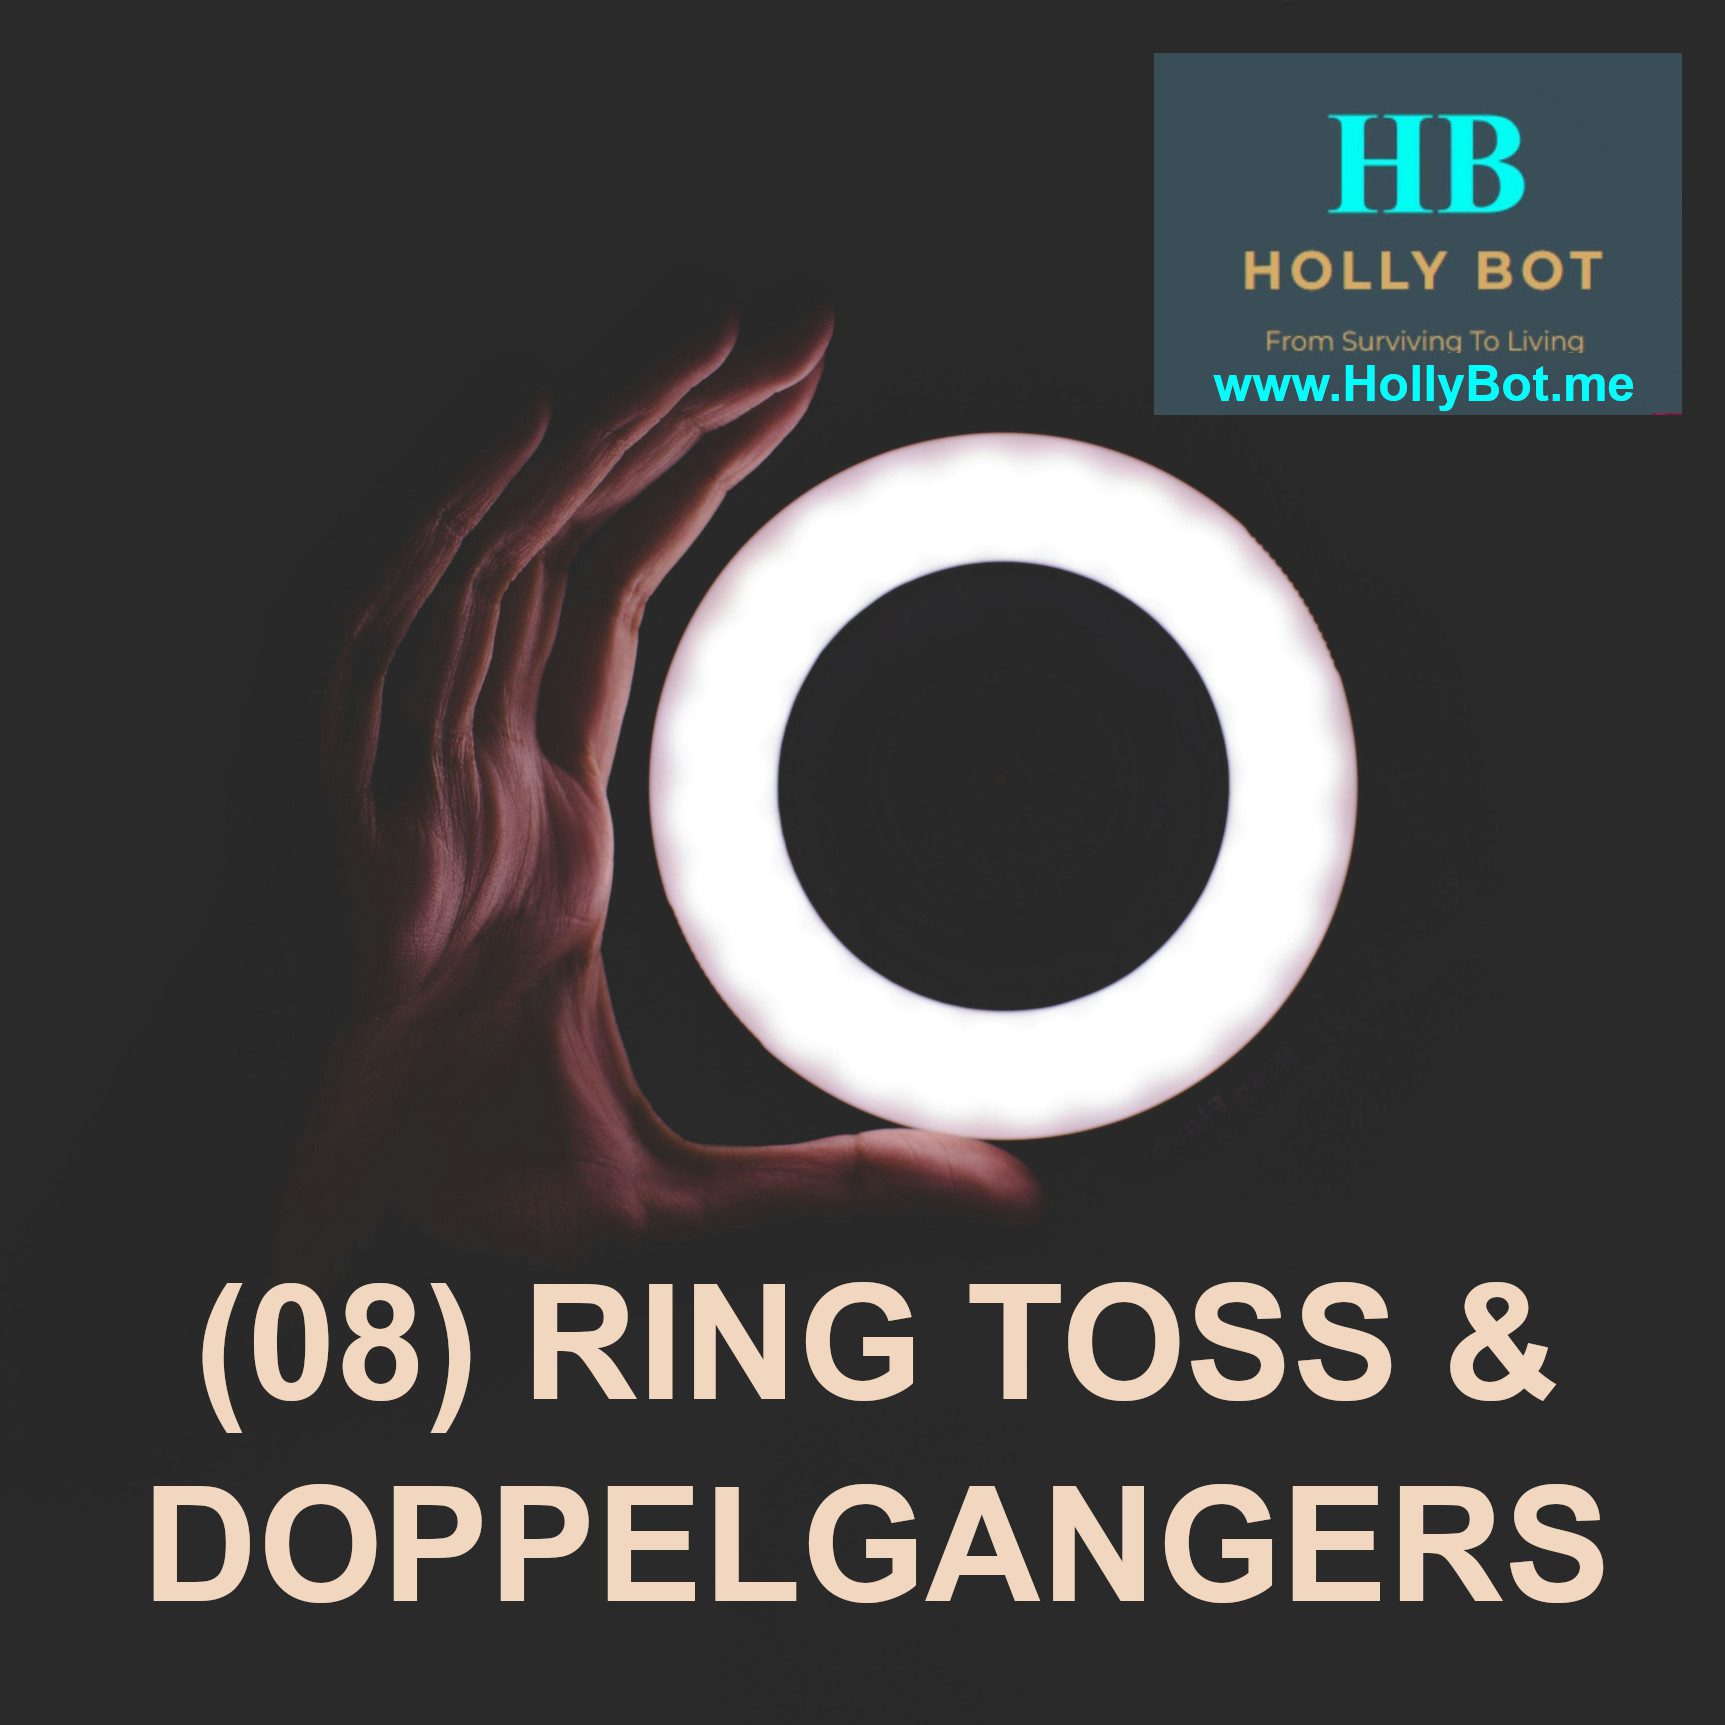 (08) RING TOSS & DOPPELGANGERS